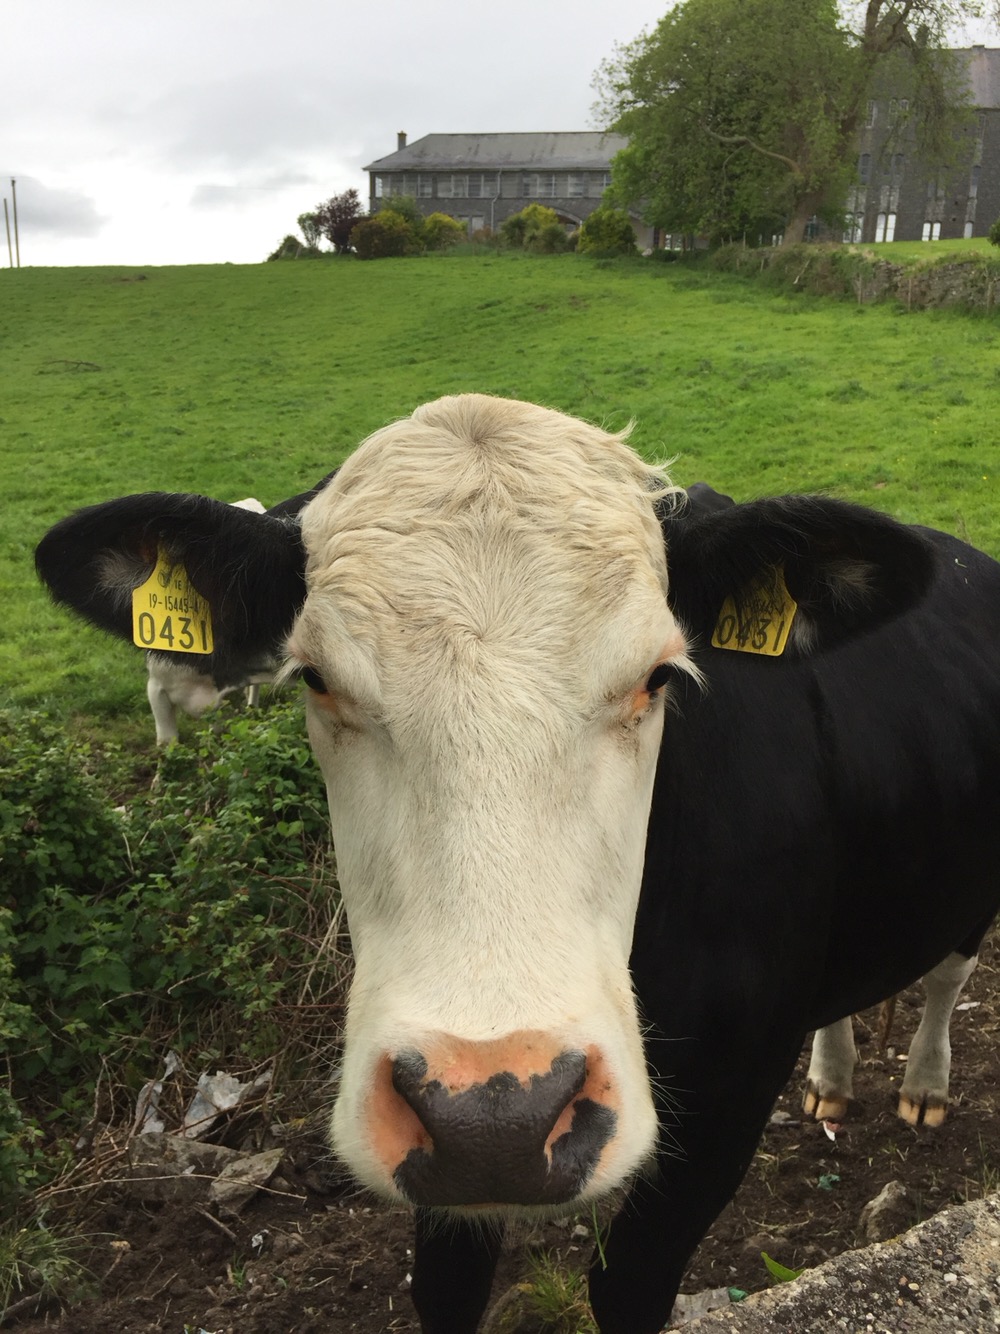 The Cow of St Finan's field